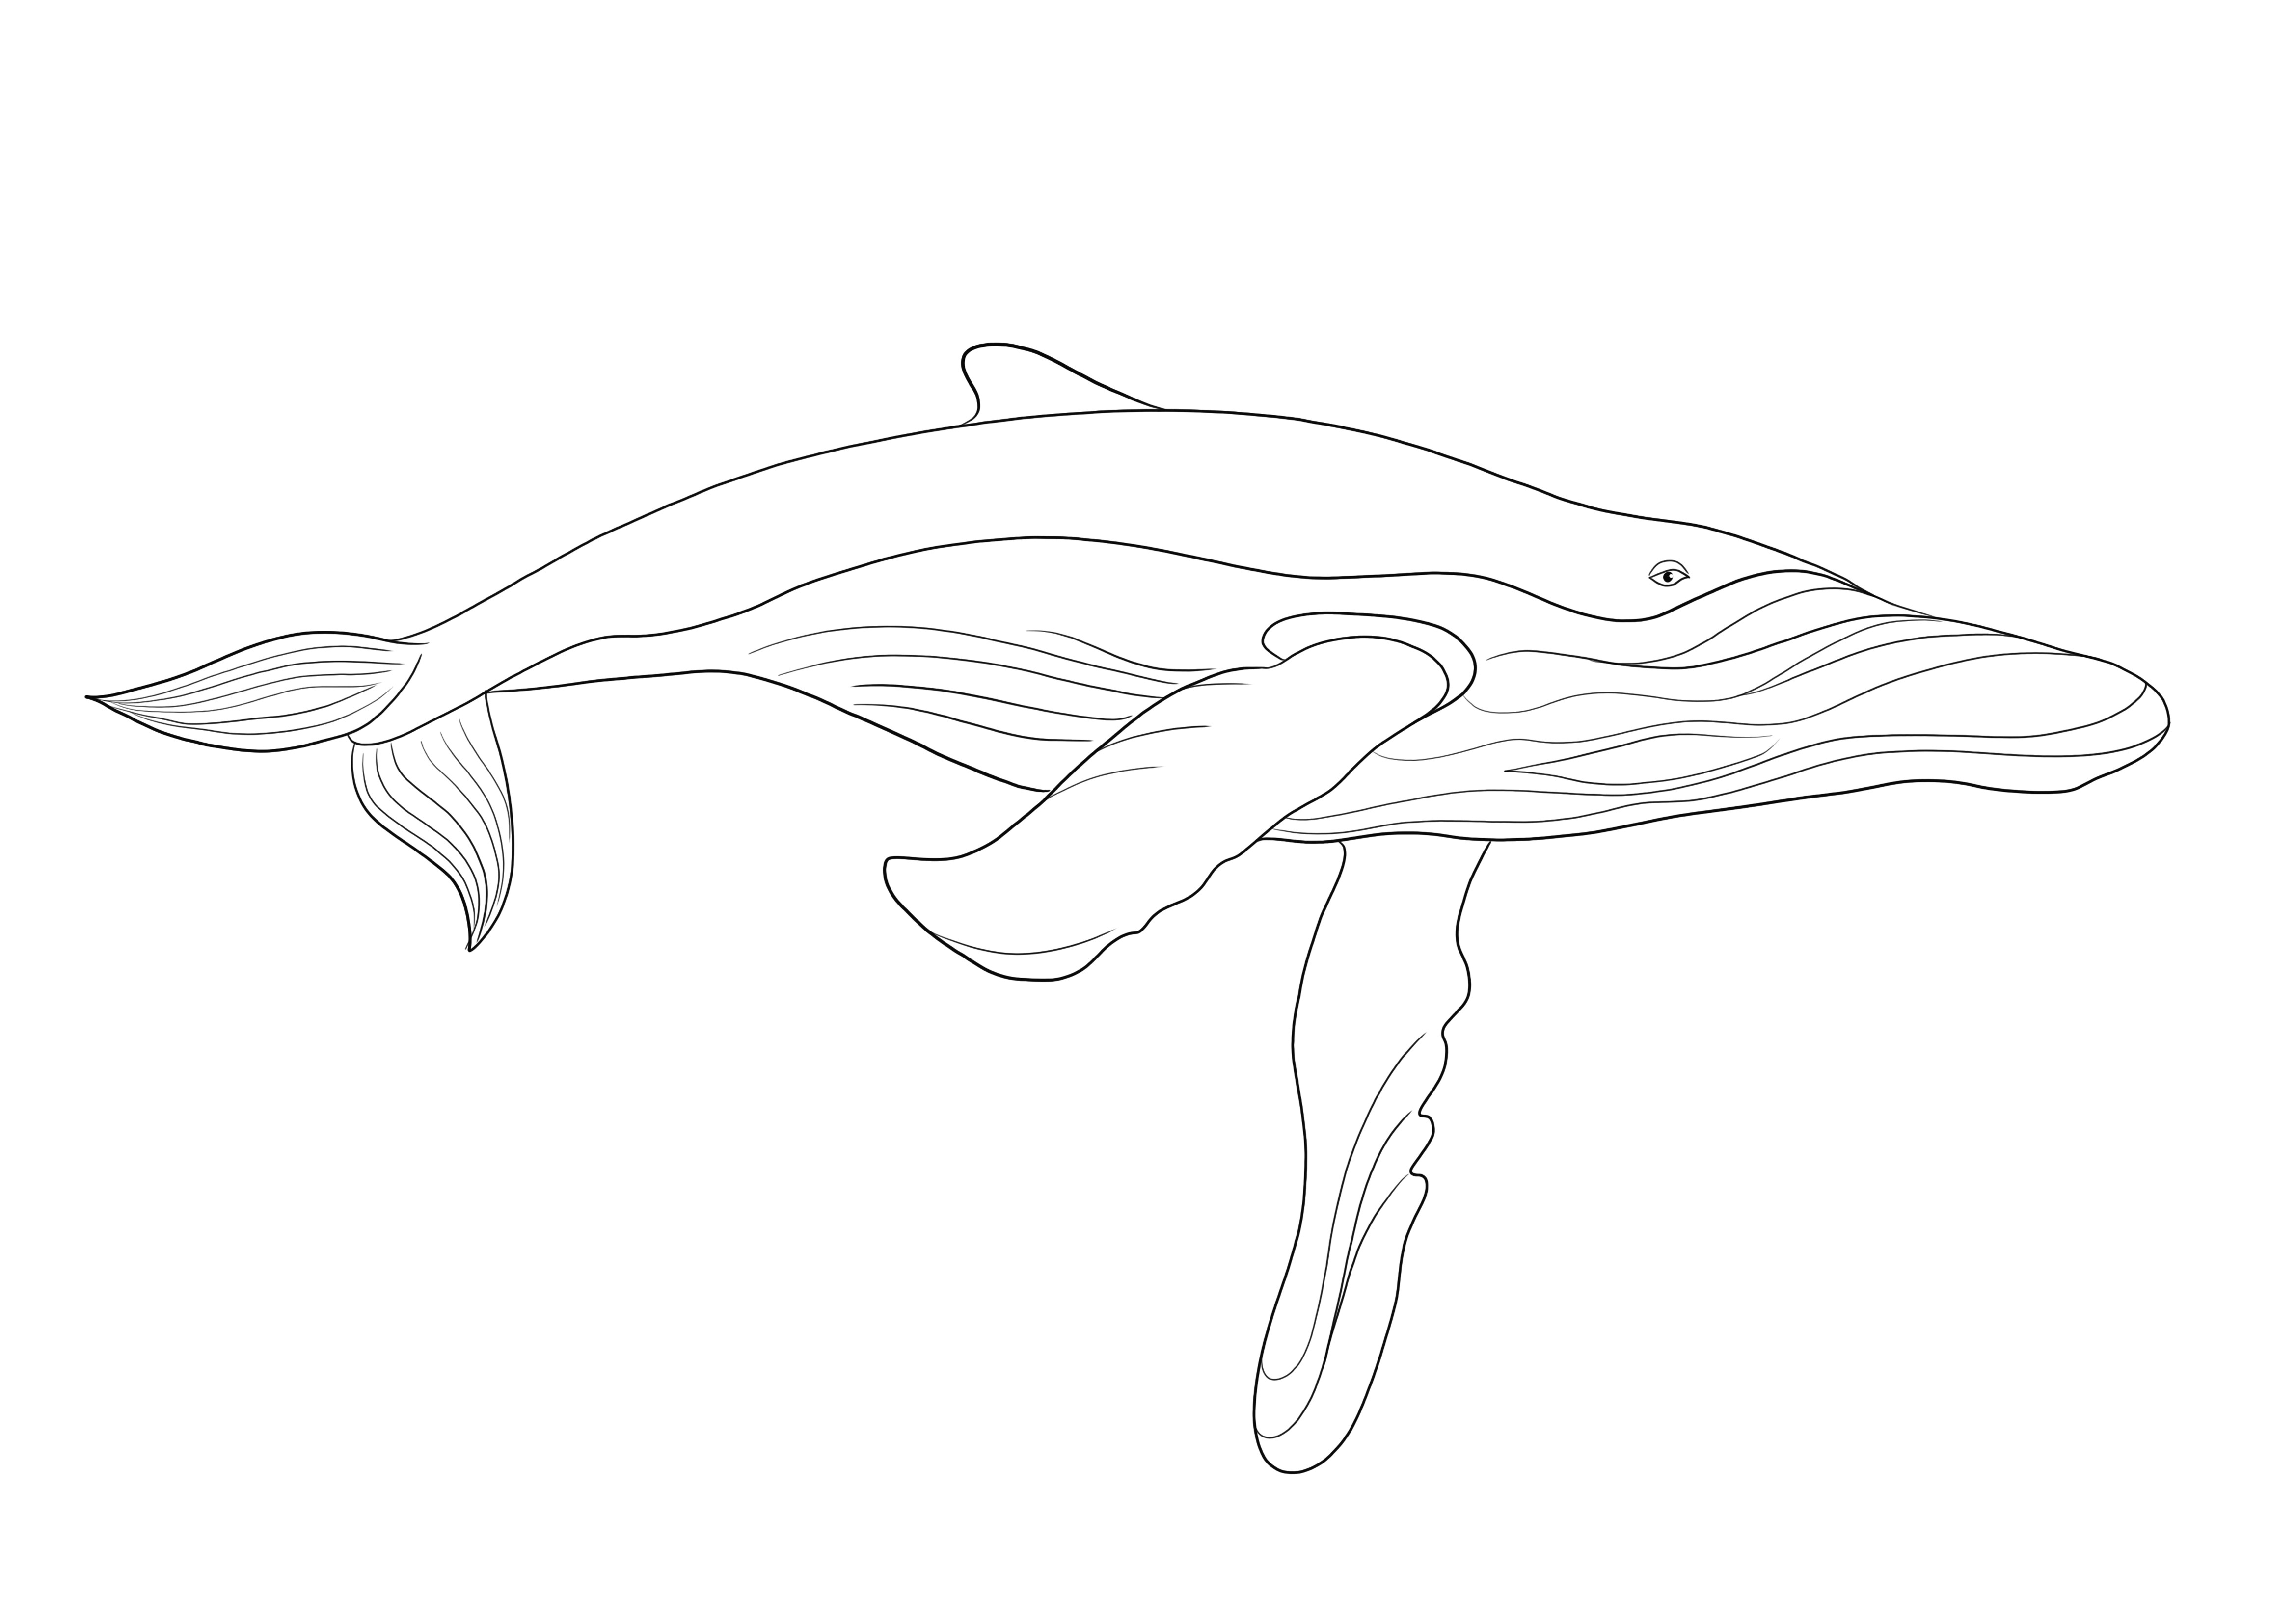 Itt van egy nagyszerű oktatási forrás a kék bálnáról, amely ingyenesen nyomtatható és színezhető